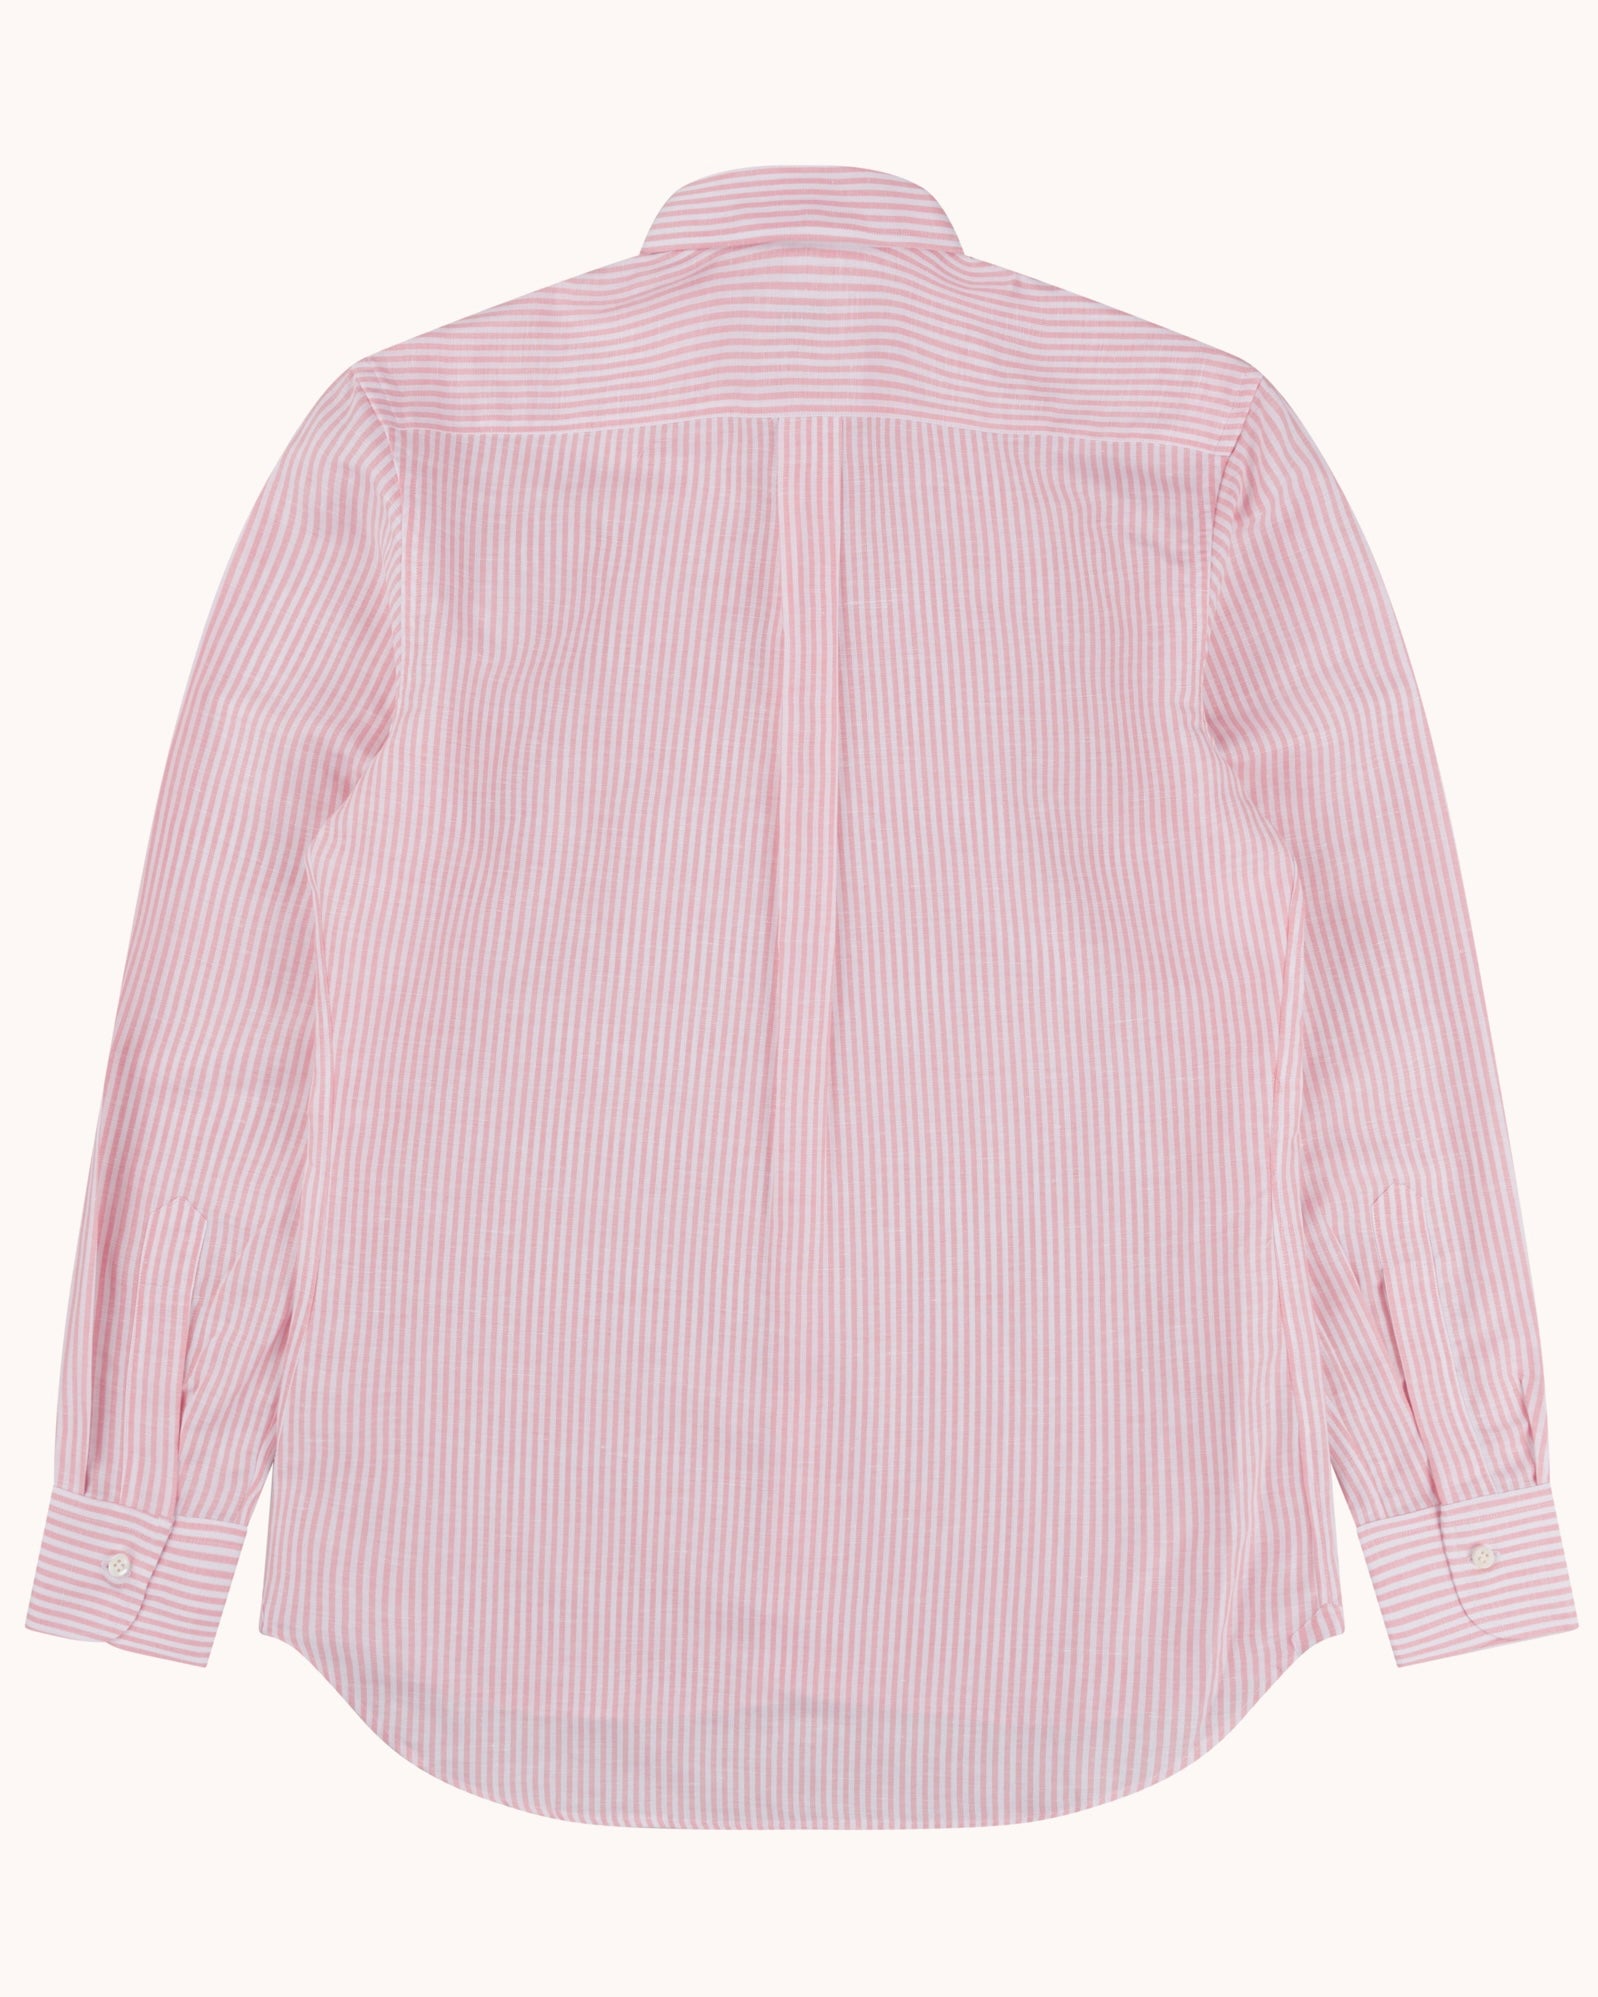 Button Down Collar Shirt - Pink Stripe Cotton Linen